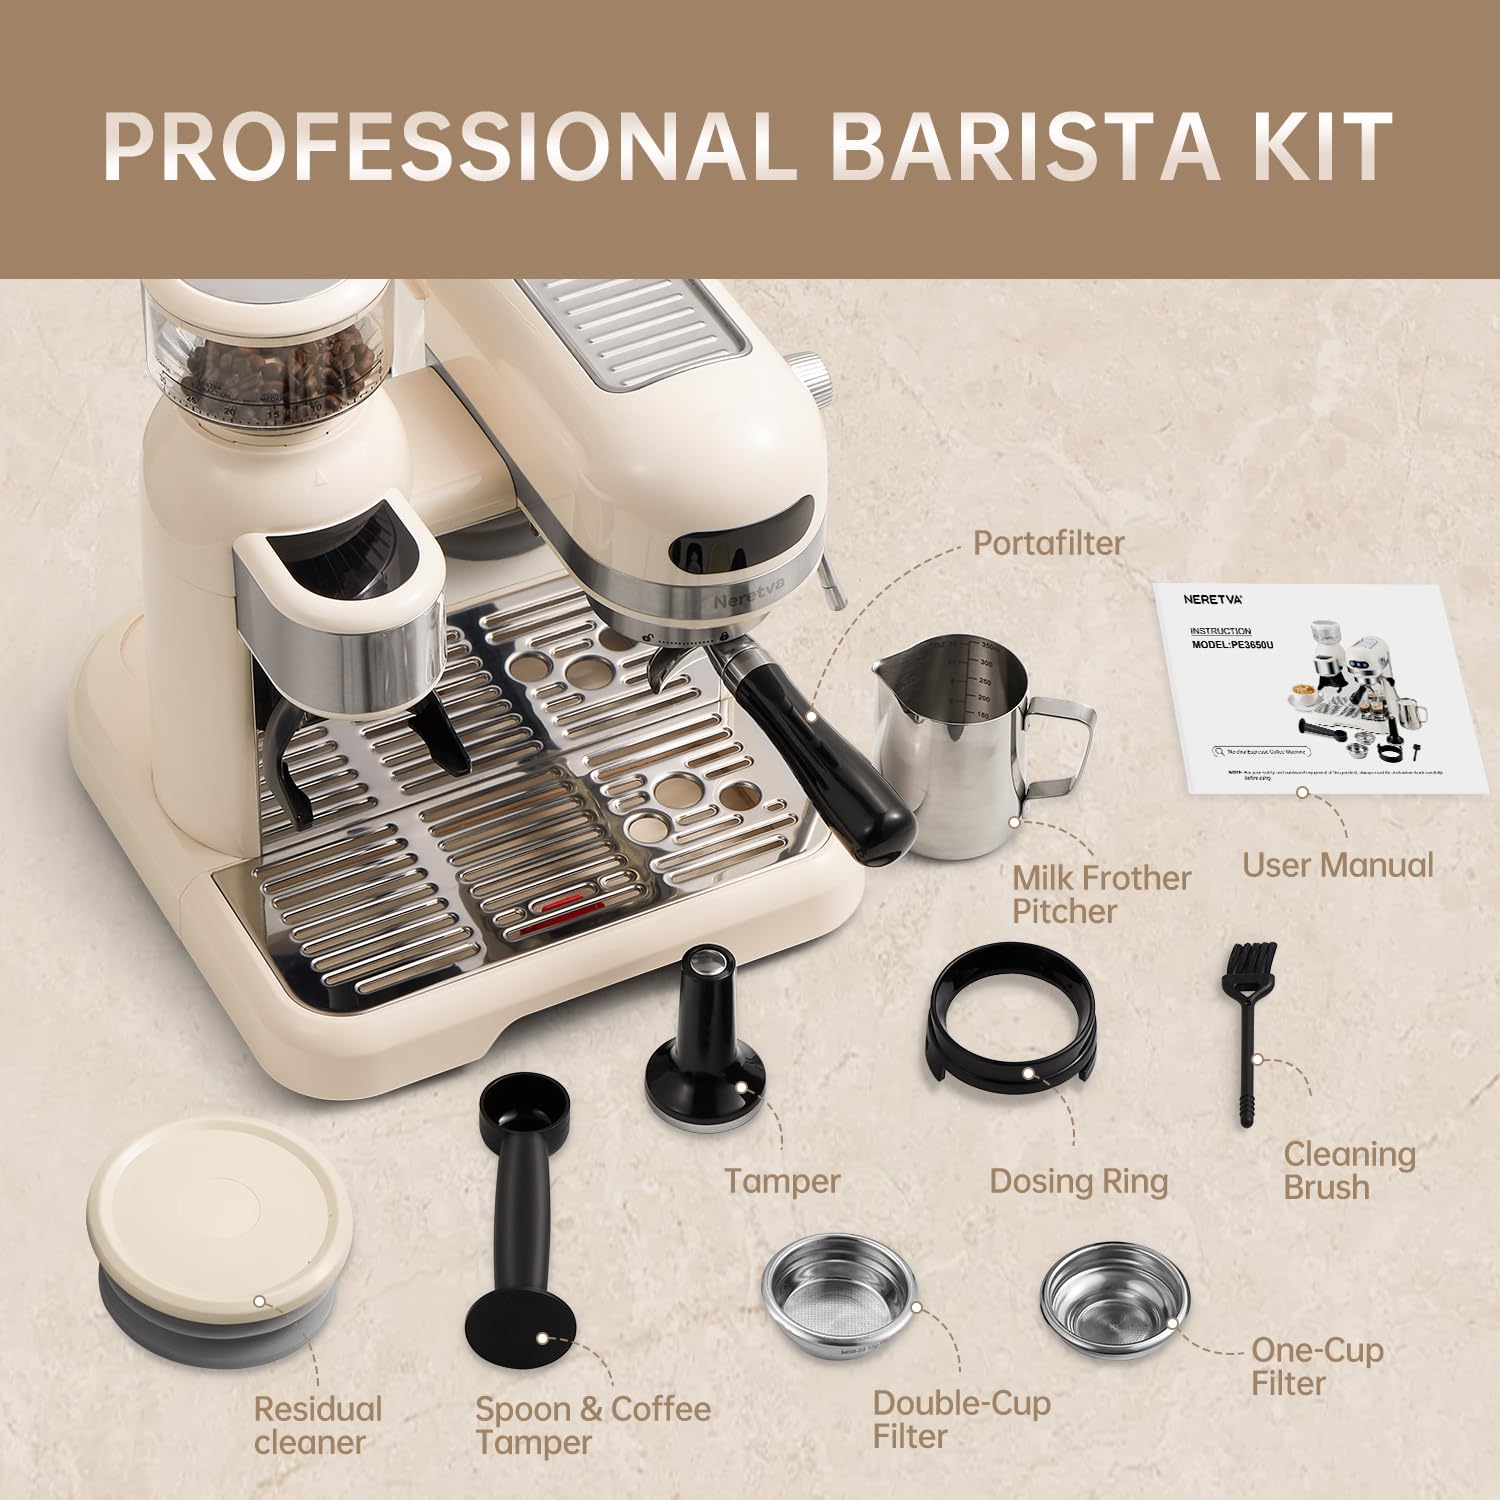 Neretva 20 Bar Espresso Coffee Machine with Grinder Steam Wand for Latte Espresso and Cappuccino, 58MM Portafilter Espresso Maker For Home Barista, 1350W Premium Italian High Pressure (Beige)